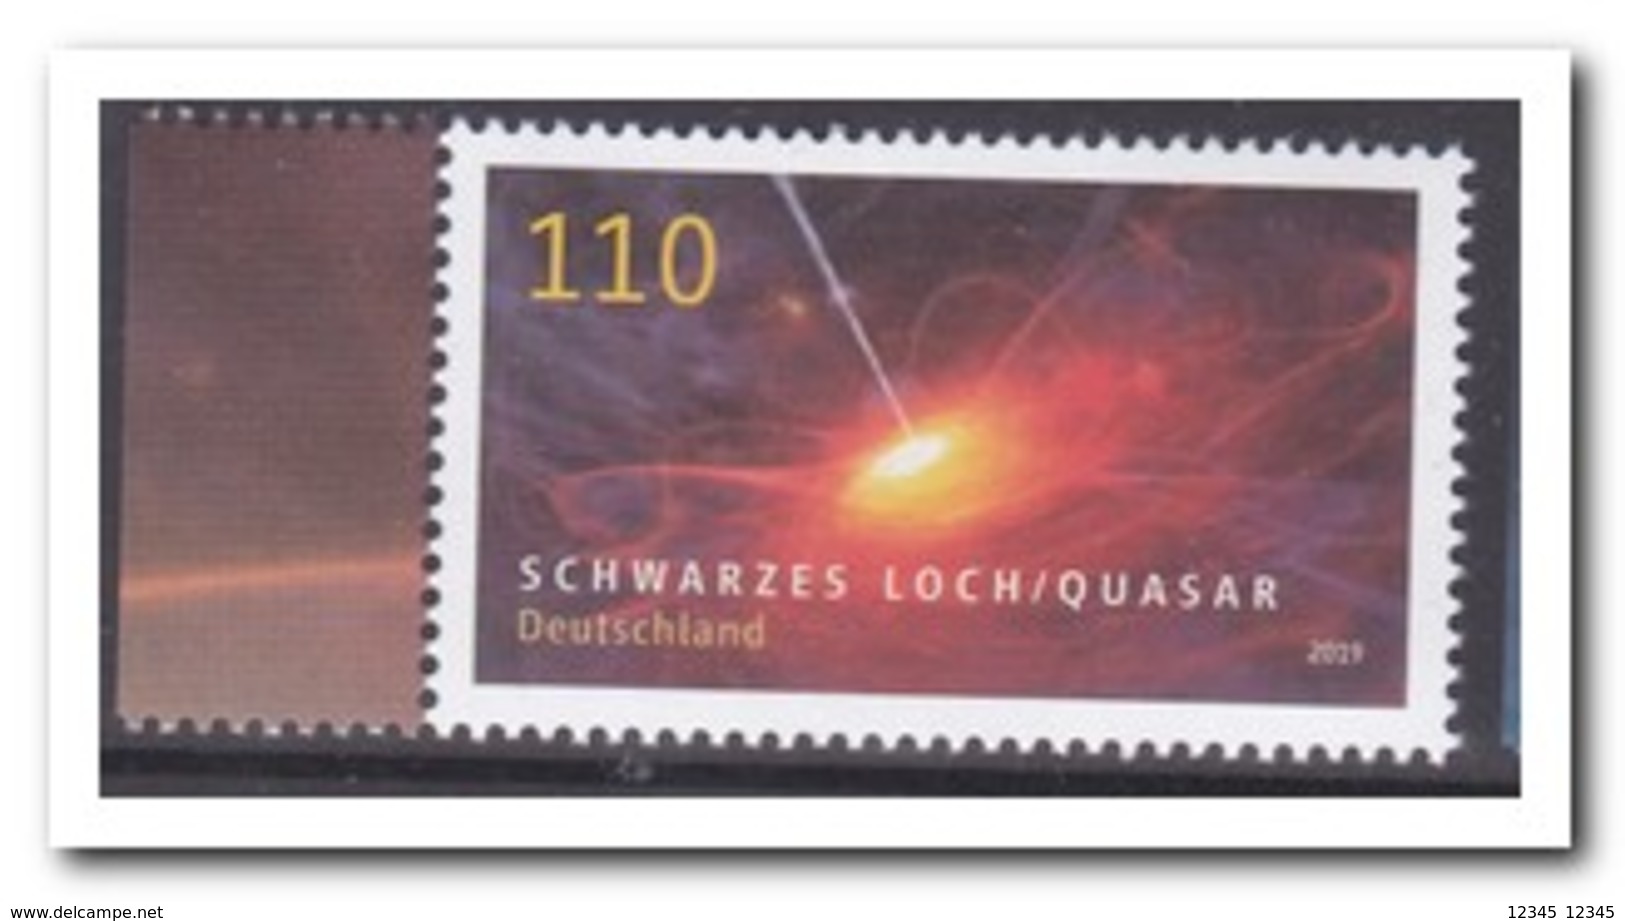 Duitsland 2019, Postfris MNH, Black Hole - Ongebruikt